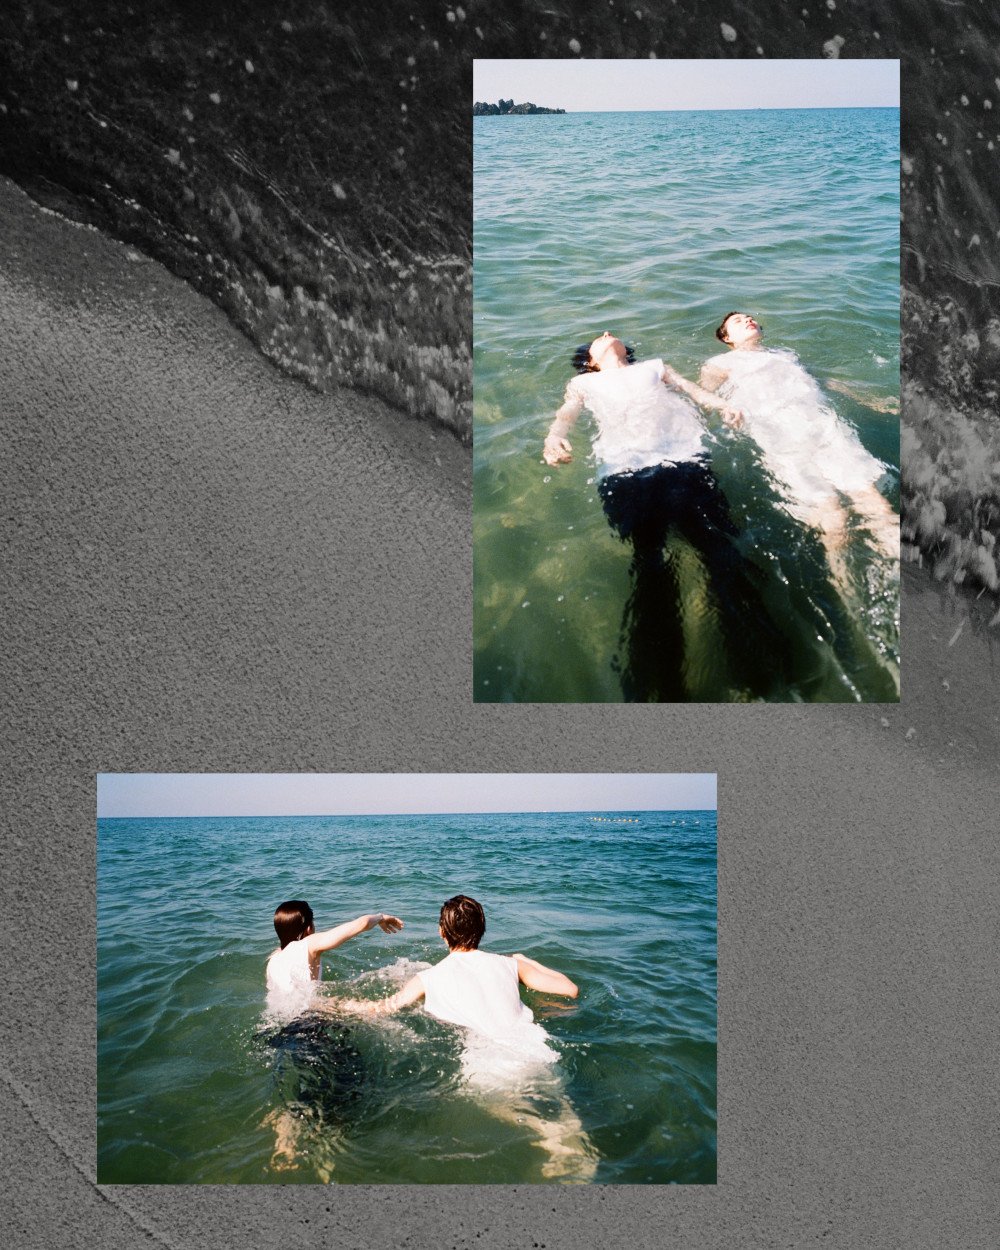 [Камбэк] ENHYPEN альбом "Dimension: Dilemma": музыкальный клип (Seaside ver.)